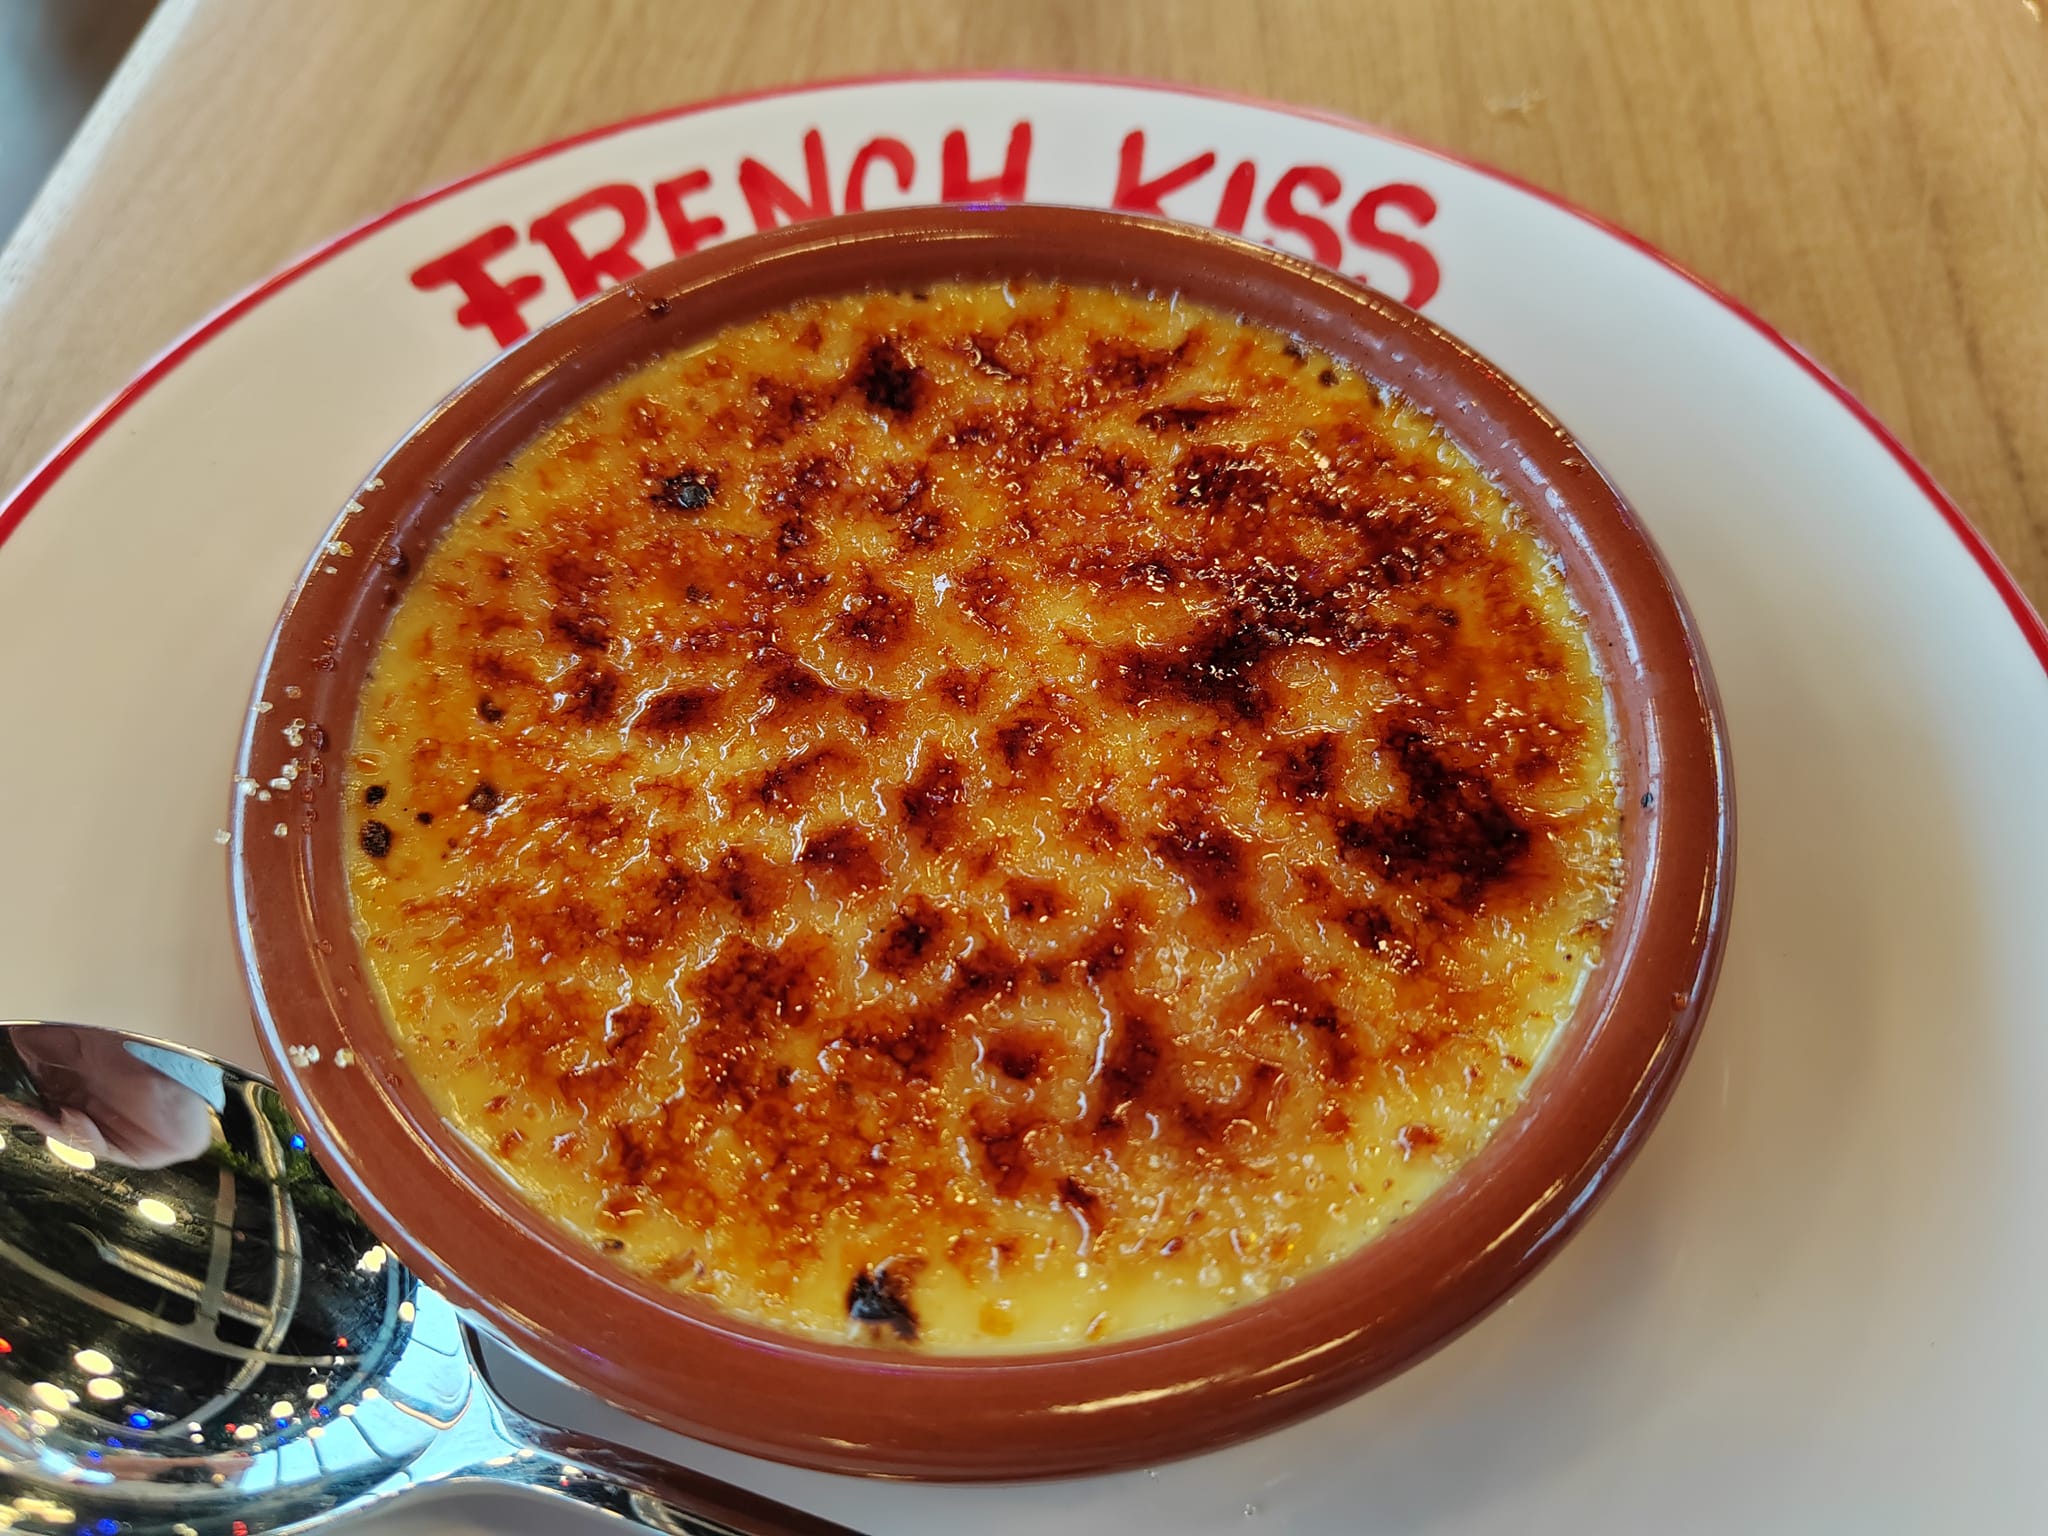 Crème brulée - Eklo Porte de Versailles - Nouveau restaurant French Kiss